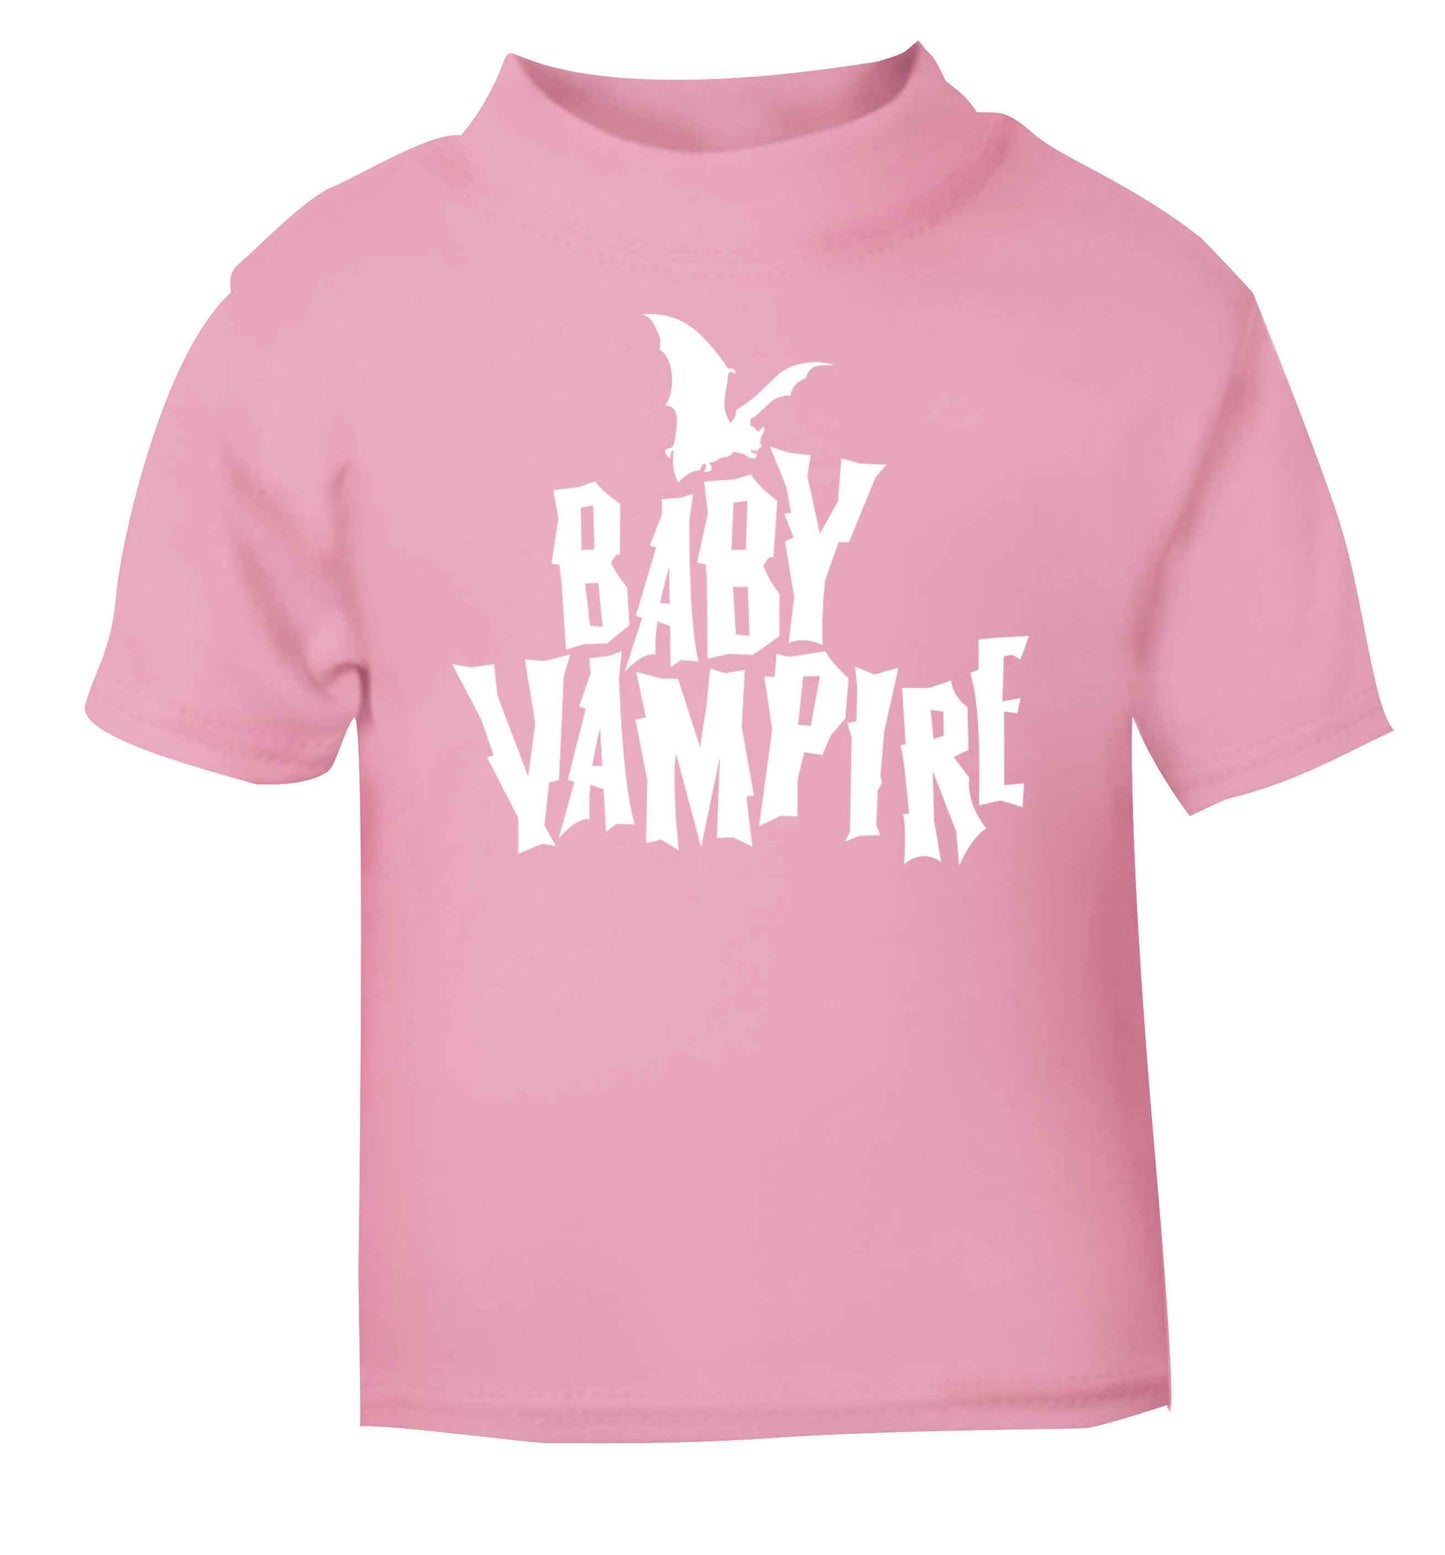 Baby vampire light pink baby toddler Tshirt 2 Years